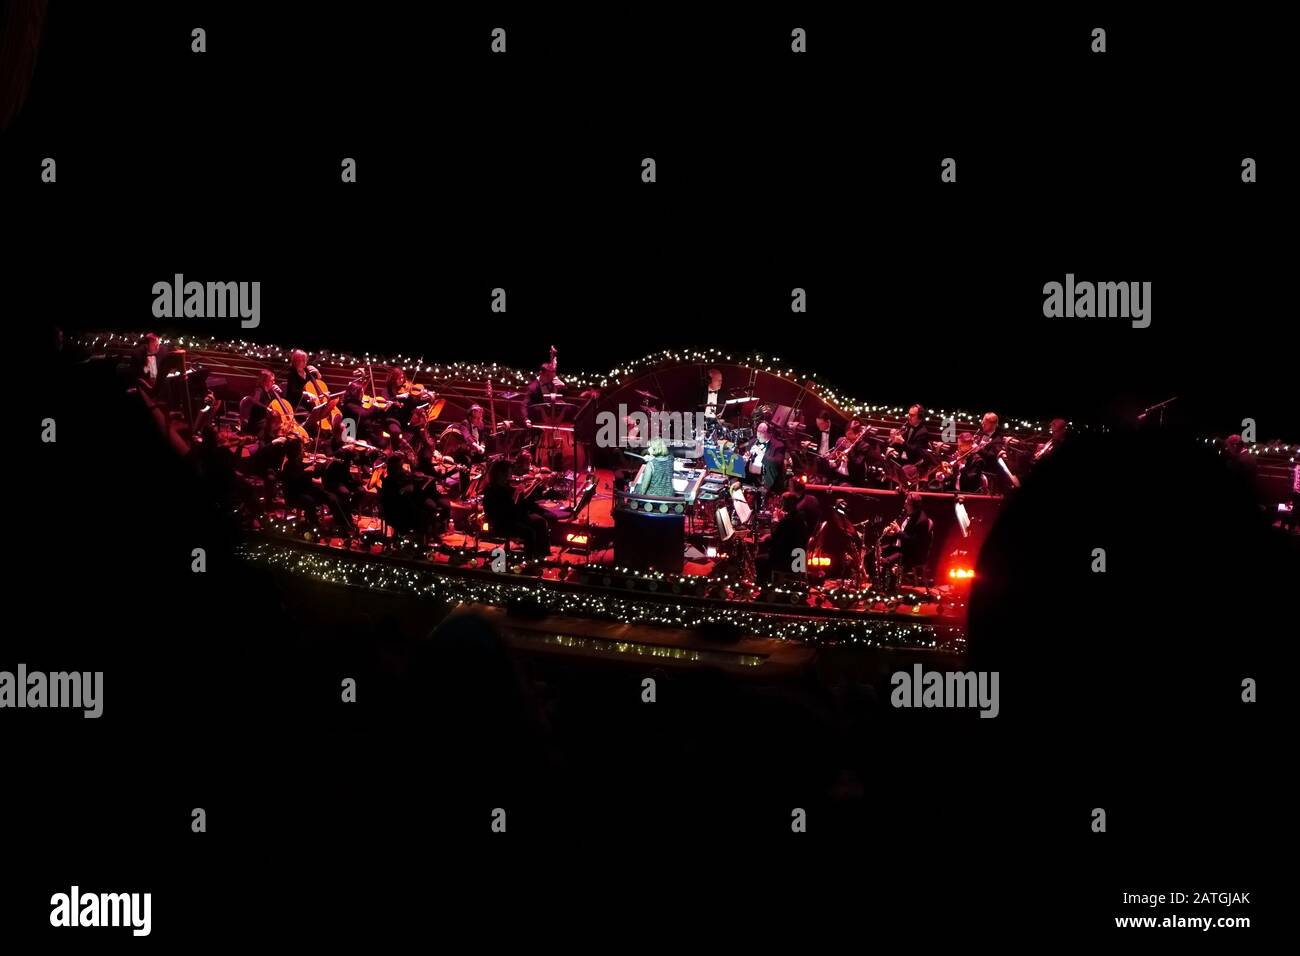 New York, NY / USA - 30 décembre 2019: Zoom en vue de la fosse de l'orchestre pendant une représentation de Rockettes à radio City Music Hall Banque D'Images